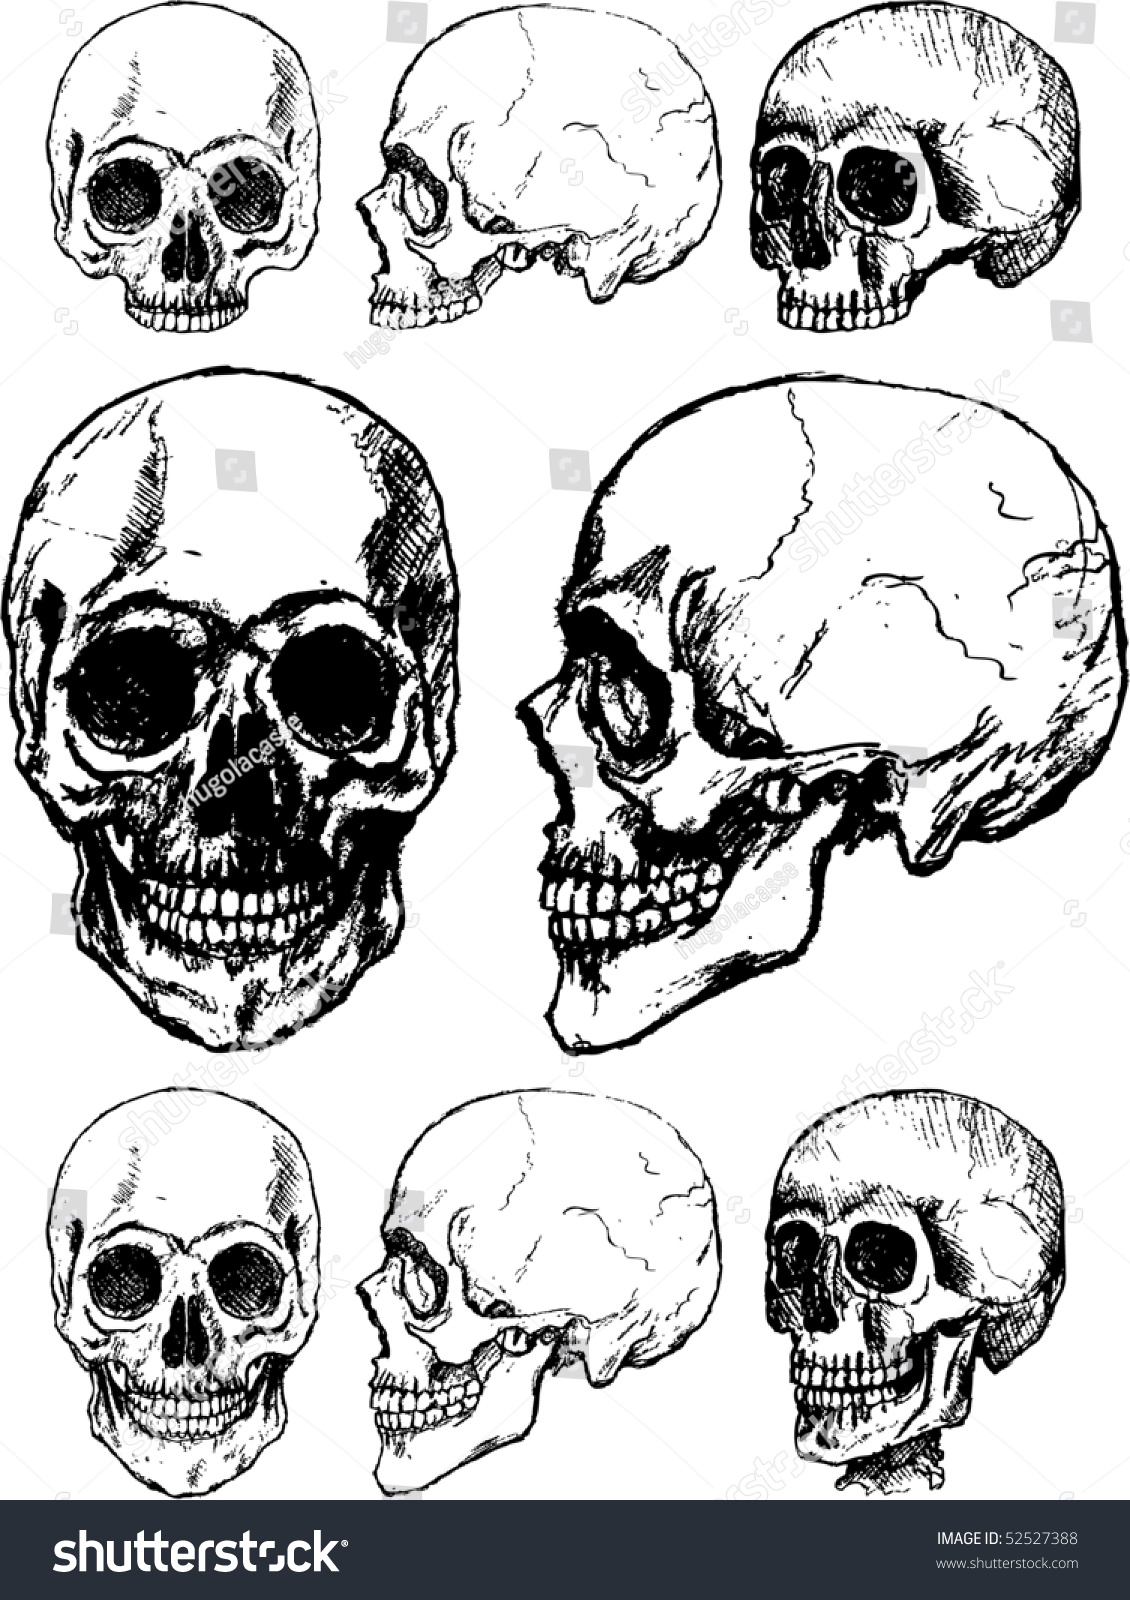 Skulls Stock Vector Illustration 52527388 : Shutterstock